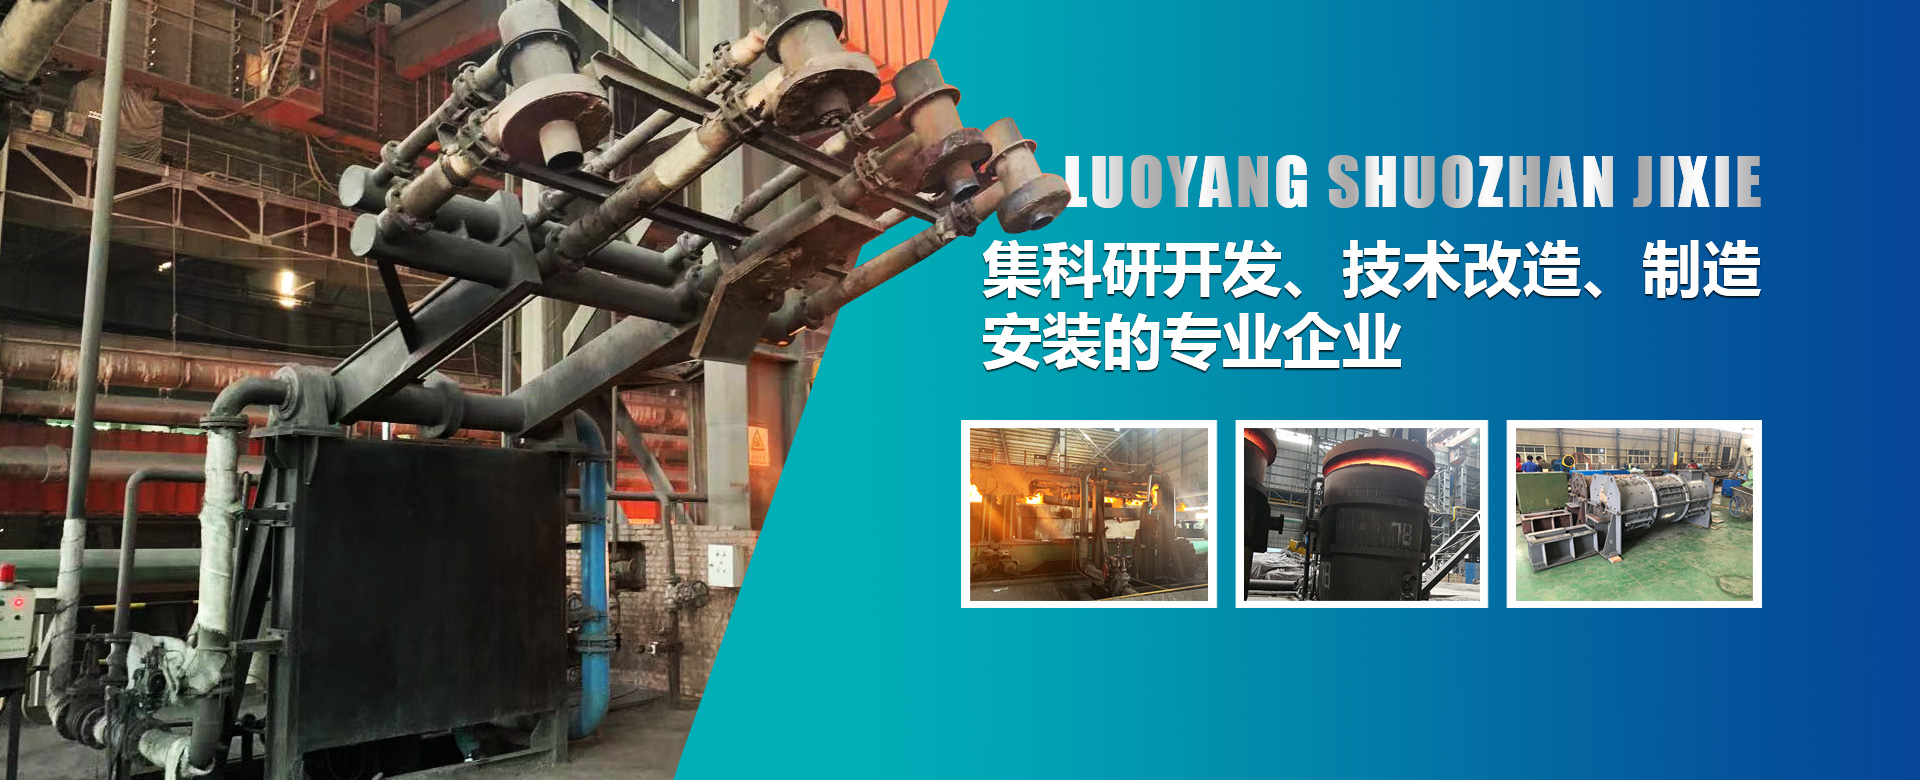 烘烤器是鋼鐵廠生產的必須設備，也是鋼鐵生產過程中能耗較大的設備